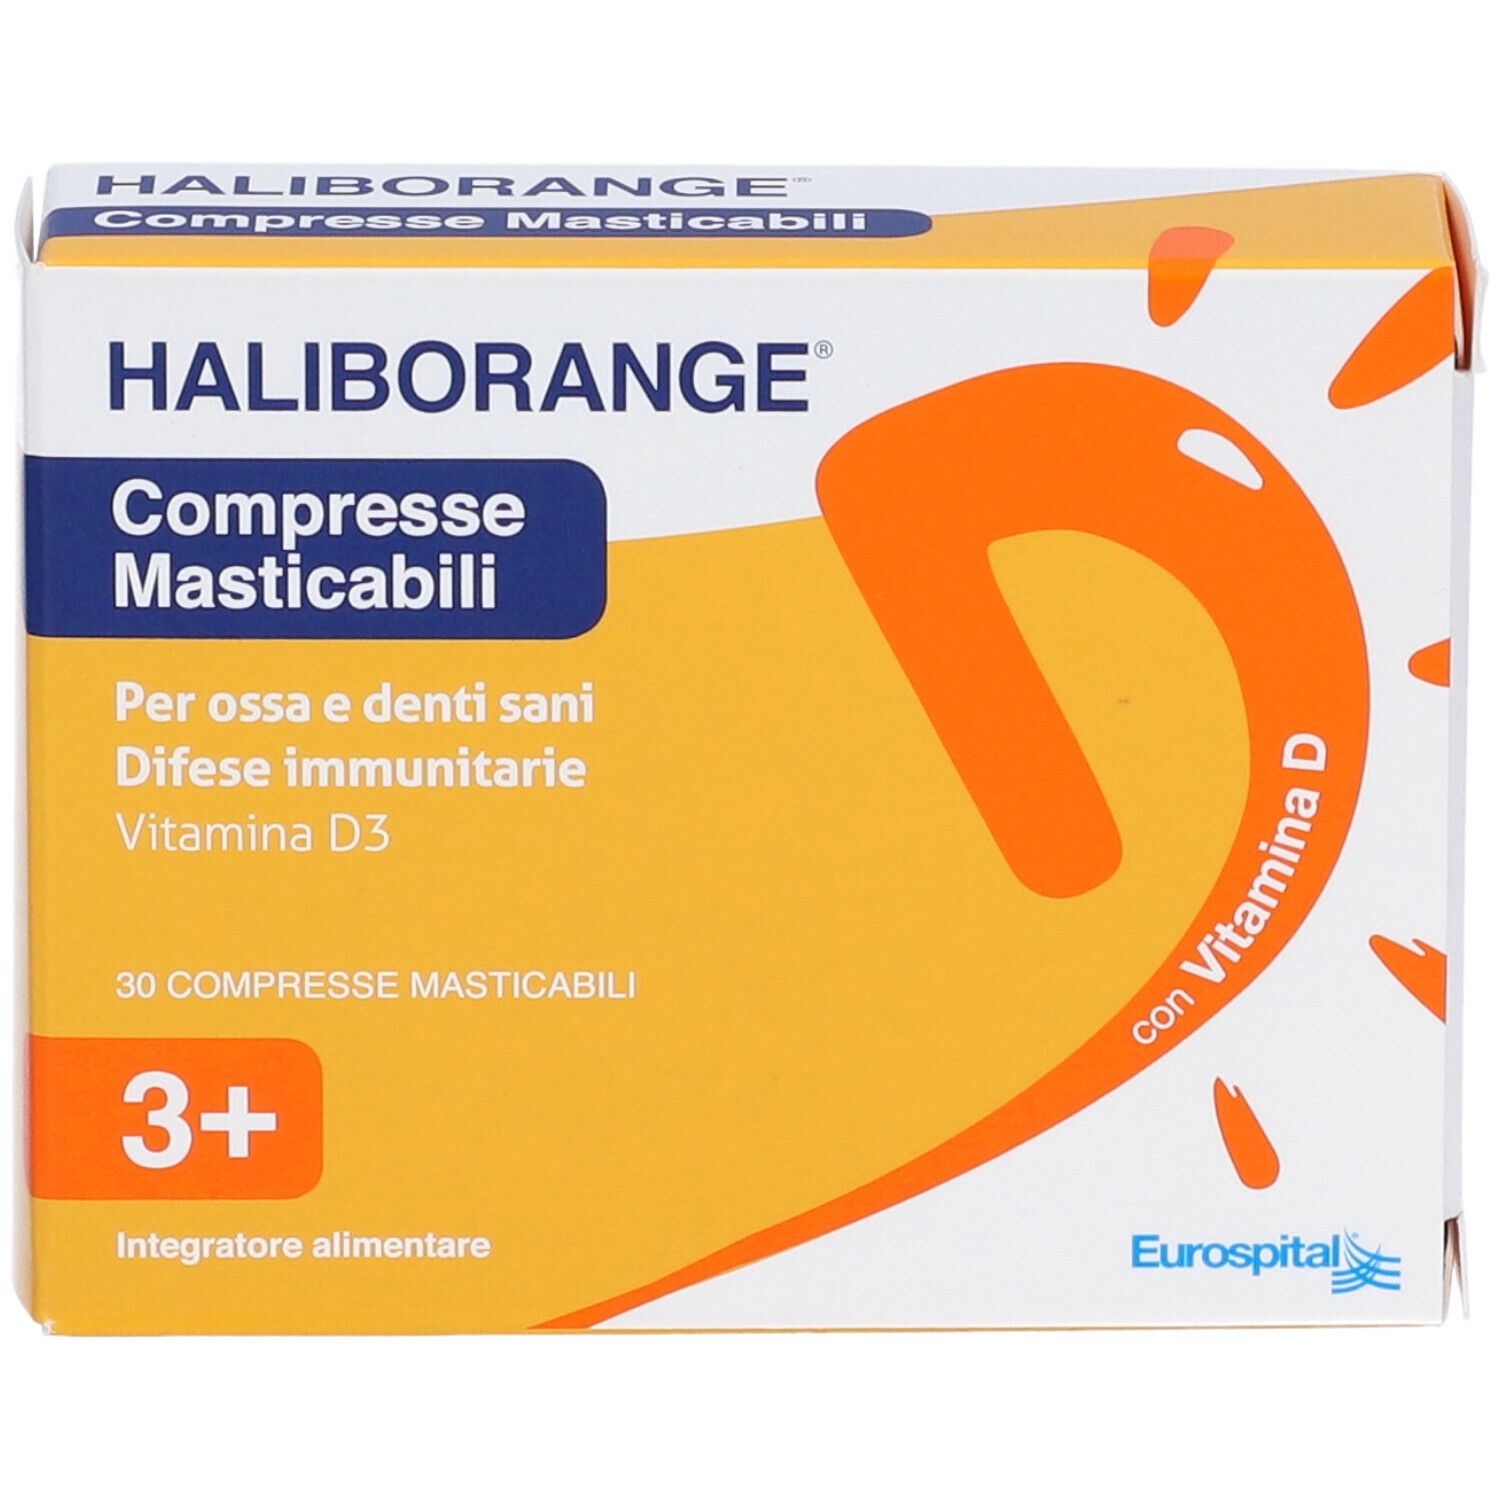 Haliborange® Compresse Masticabili